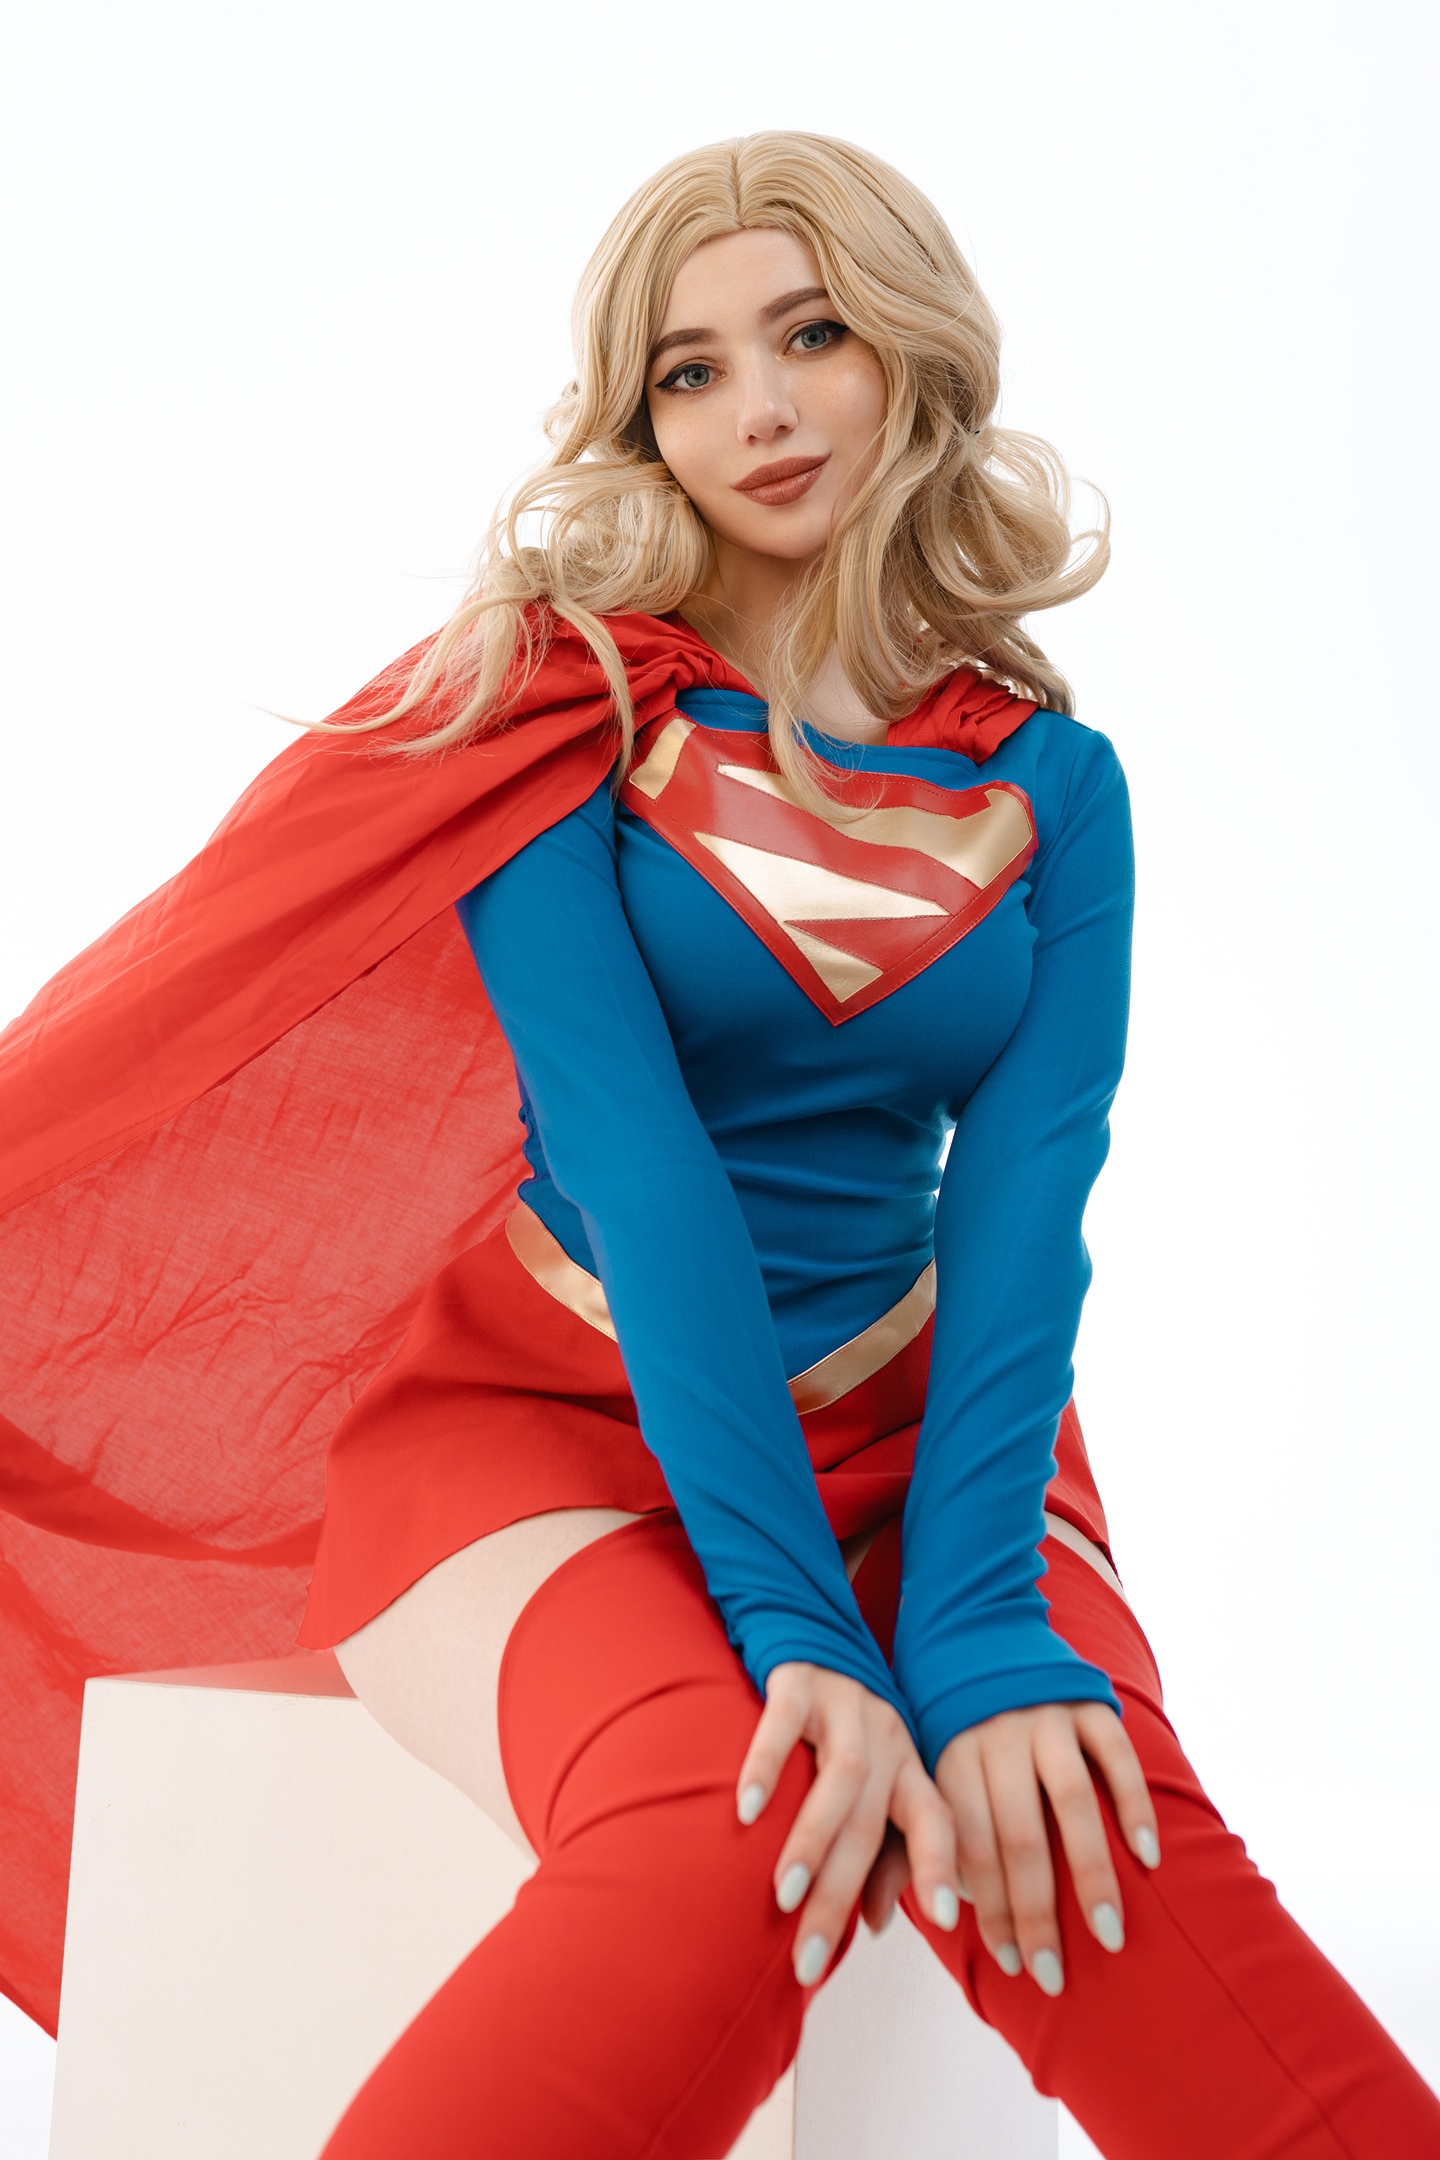 People 1440x2160 Alina Becker women model cosplay Supergirl DC Comics